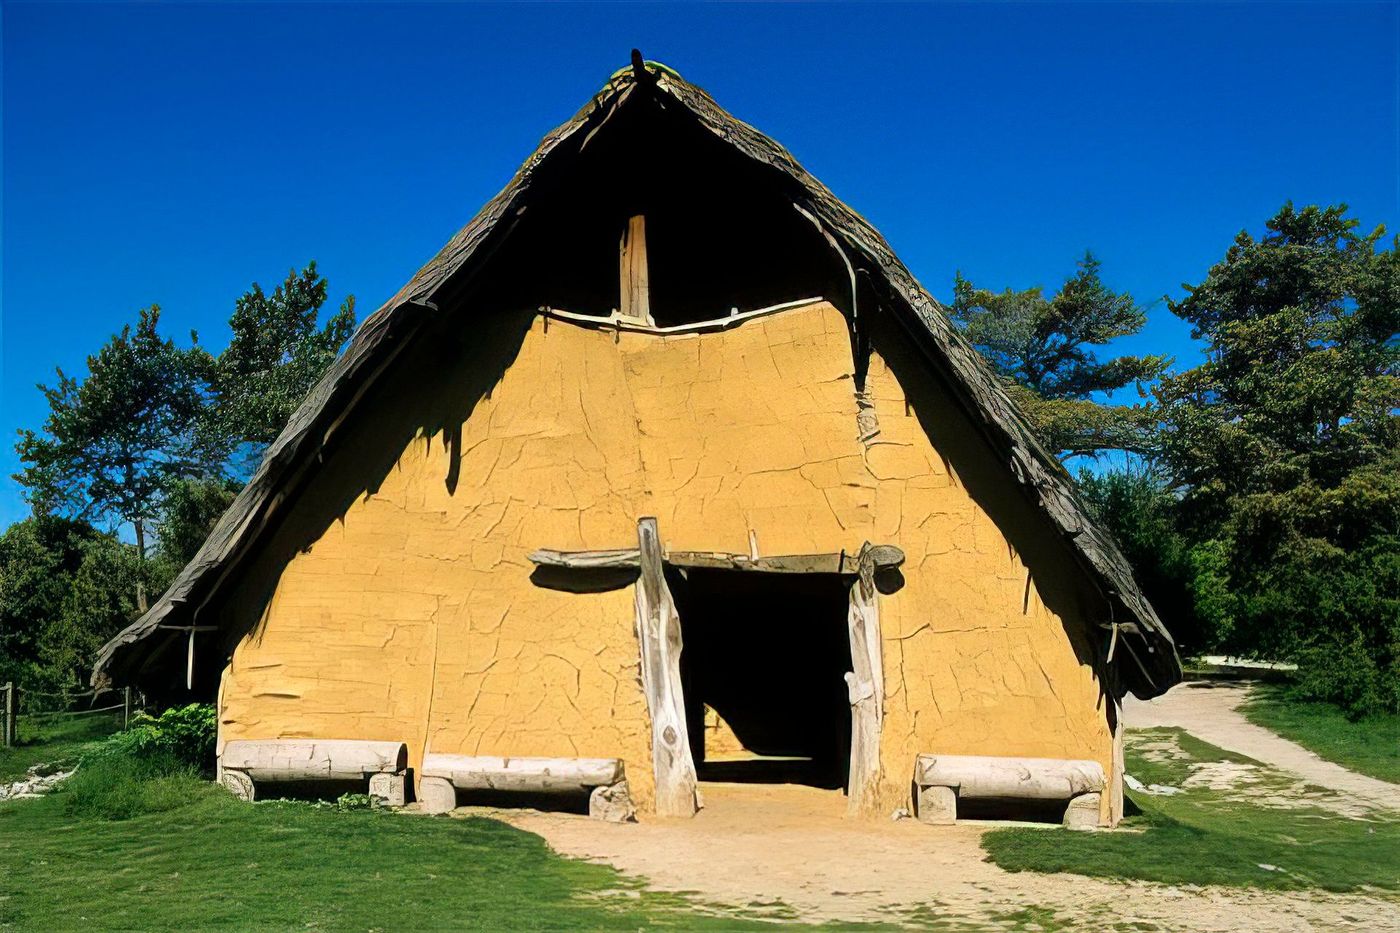 Habitat préhistorique, parc Samara, La Chaussée Tirancourt